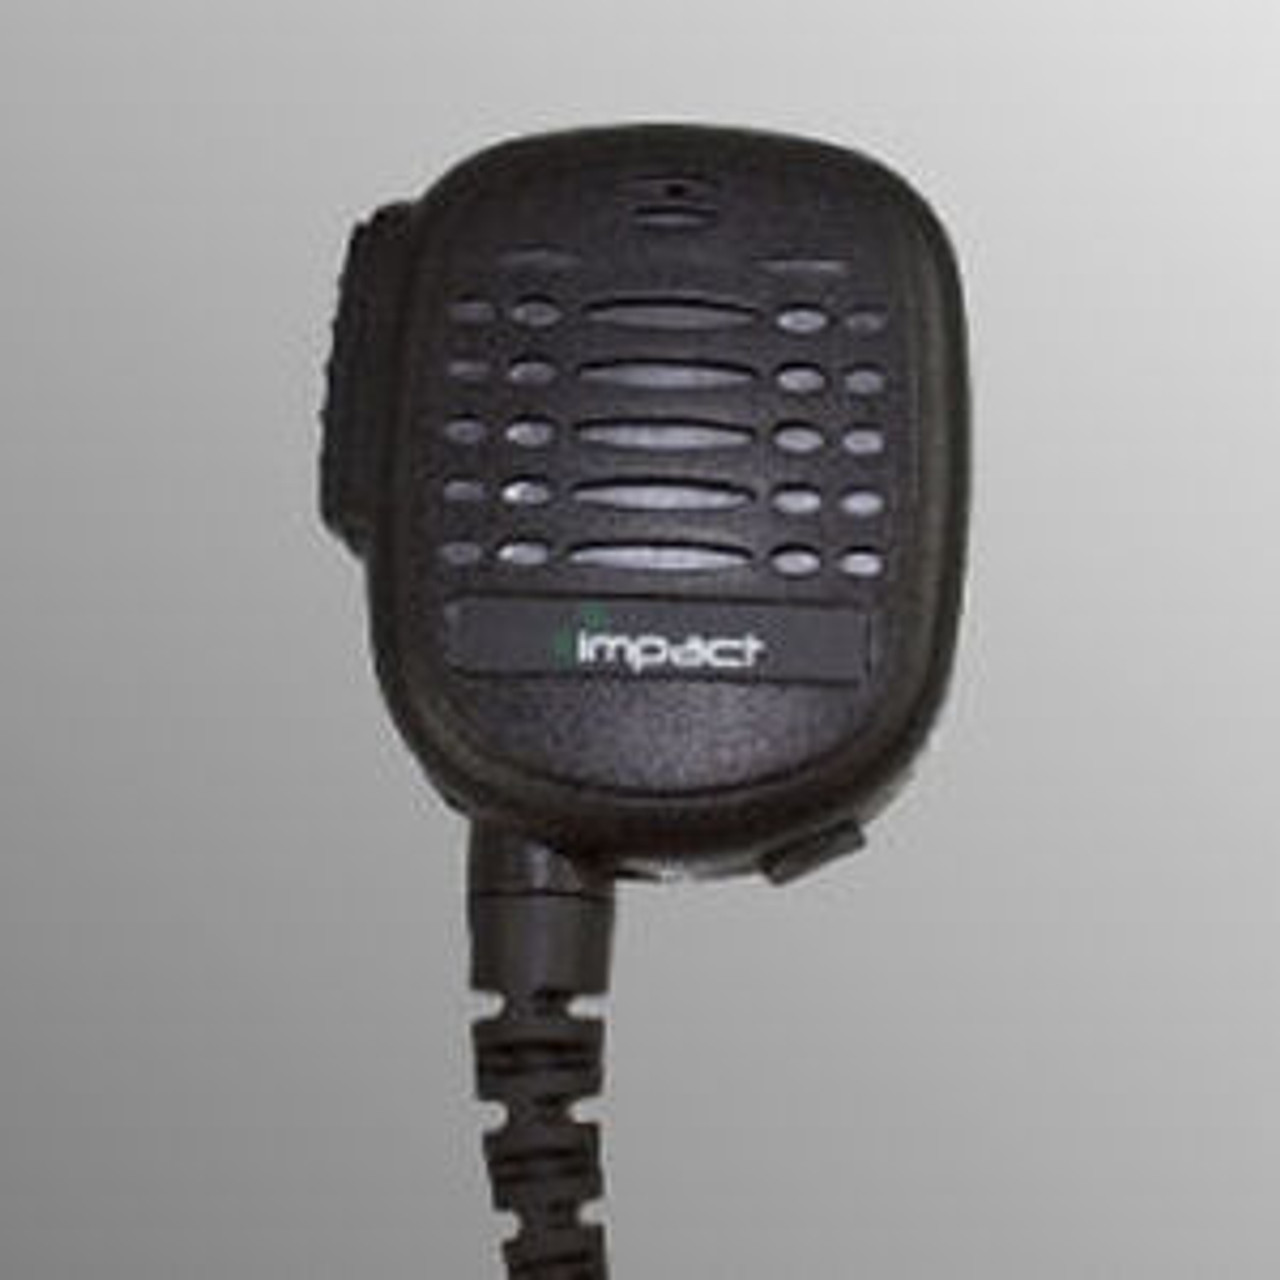 ICOM F4400D Noise Canceling Speaker Mic.